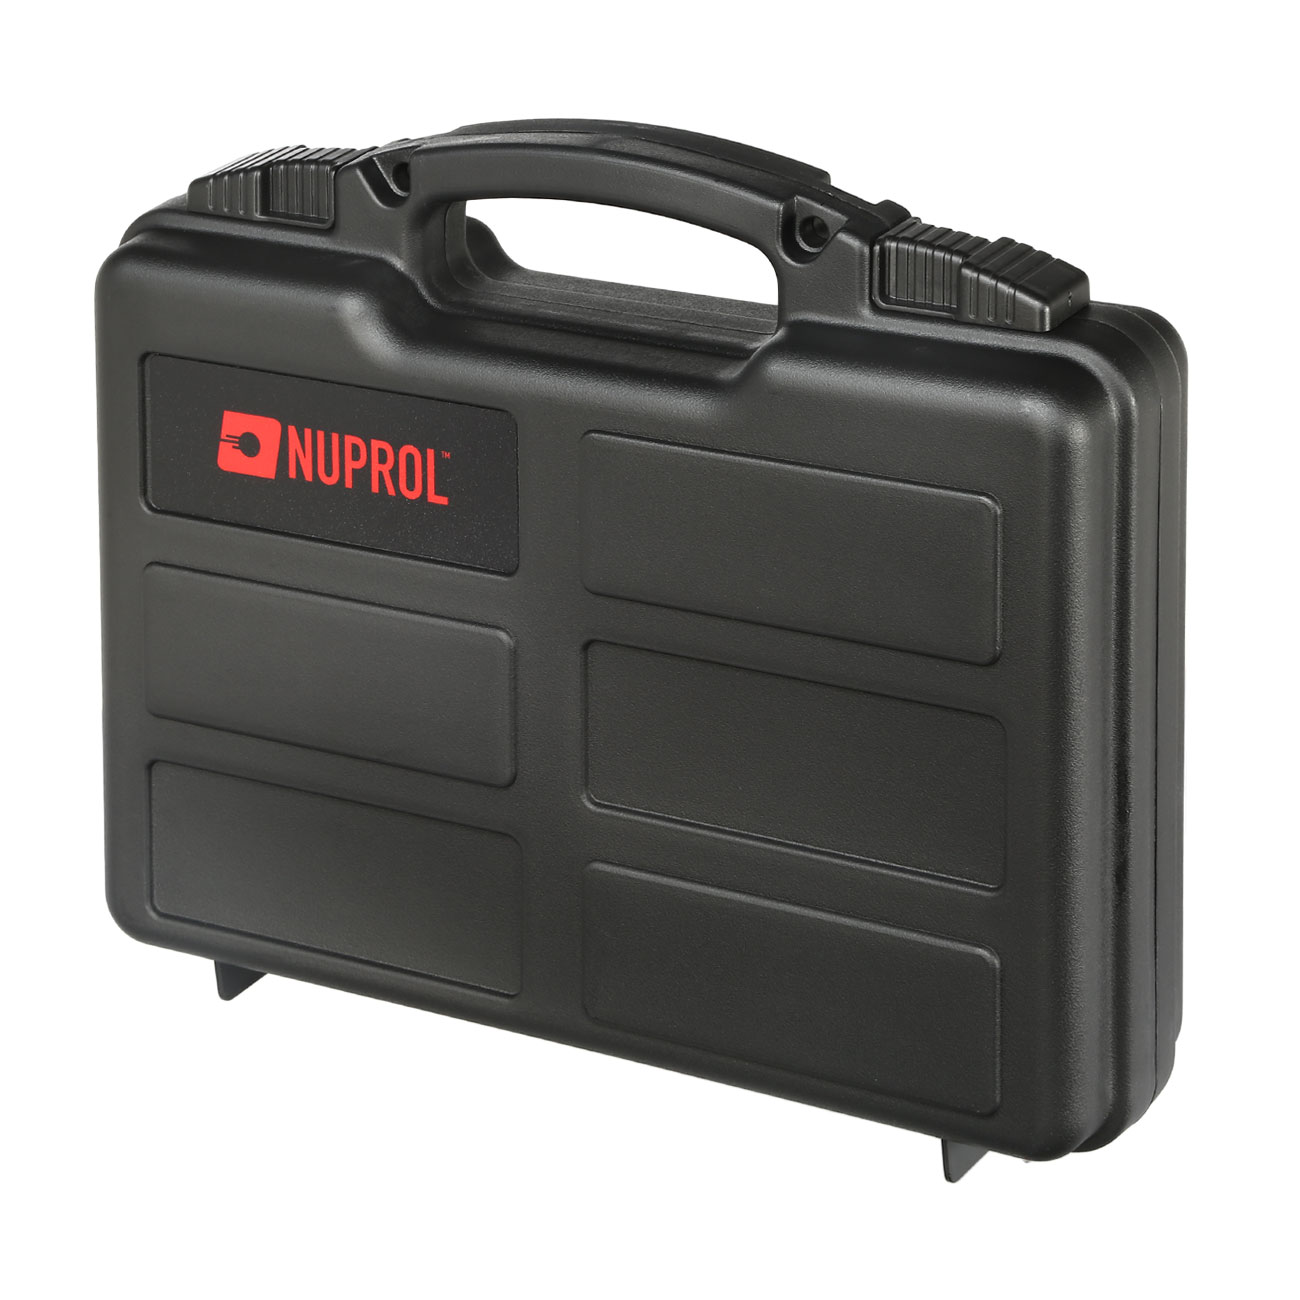 Nuprol Small Hard Case Pistolenkoffer 31 x 21 x 6,5 cm PnP-Schaumstoff schwarz Bild 1